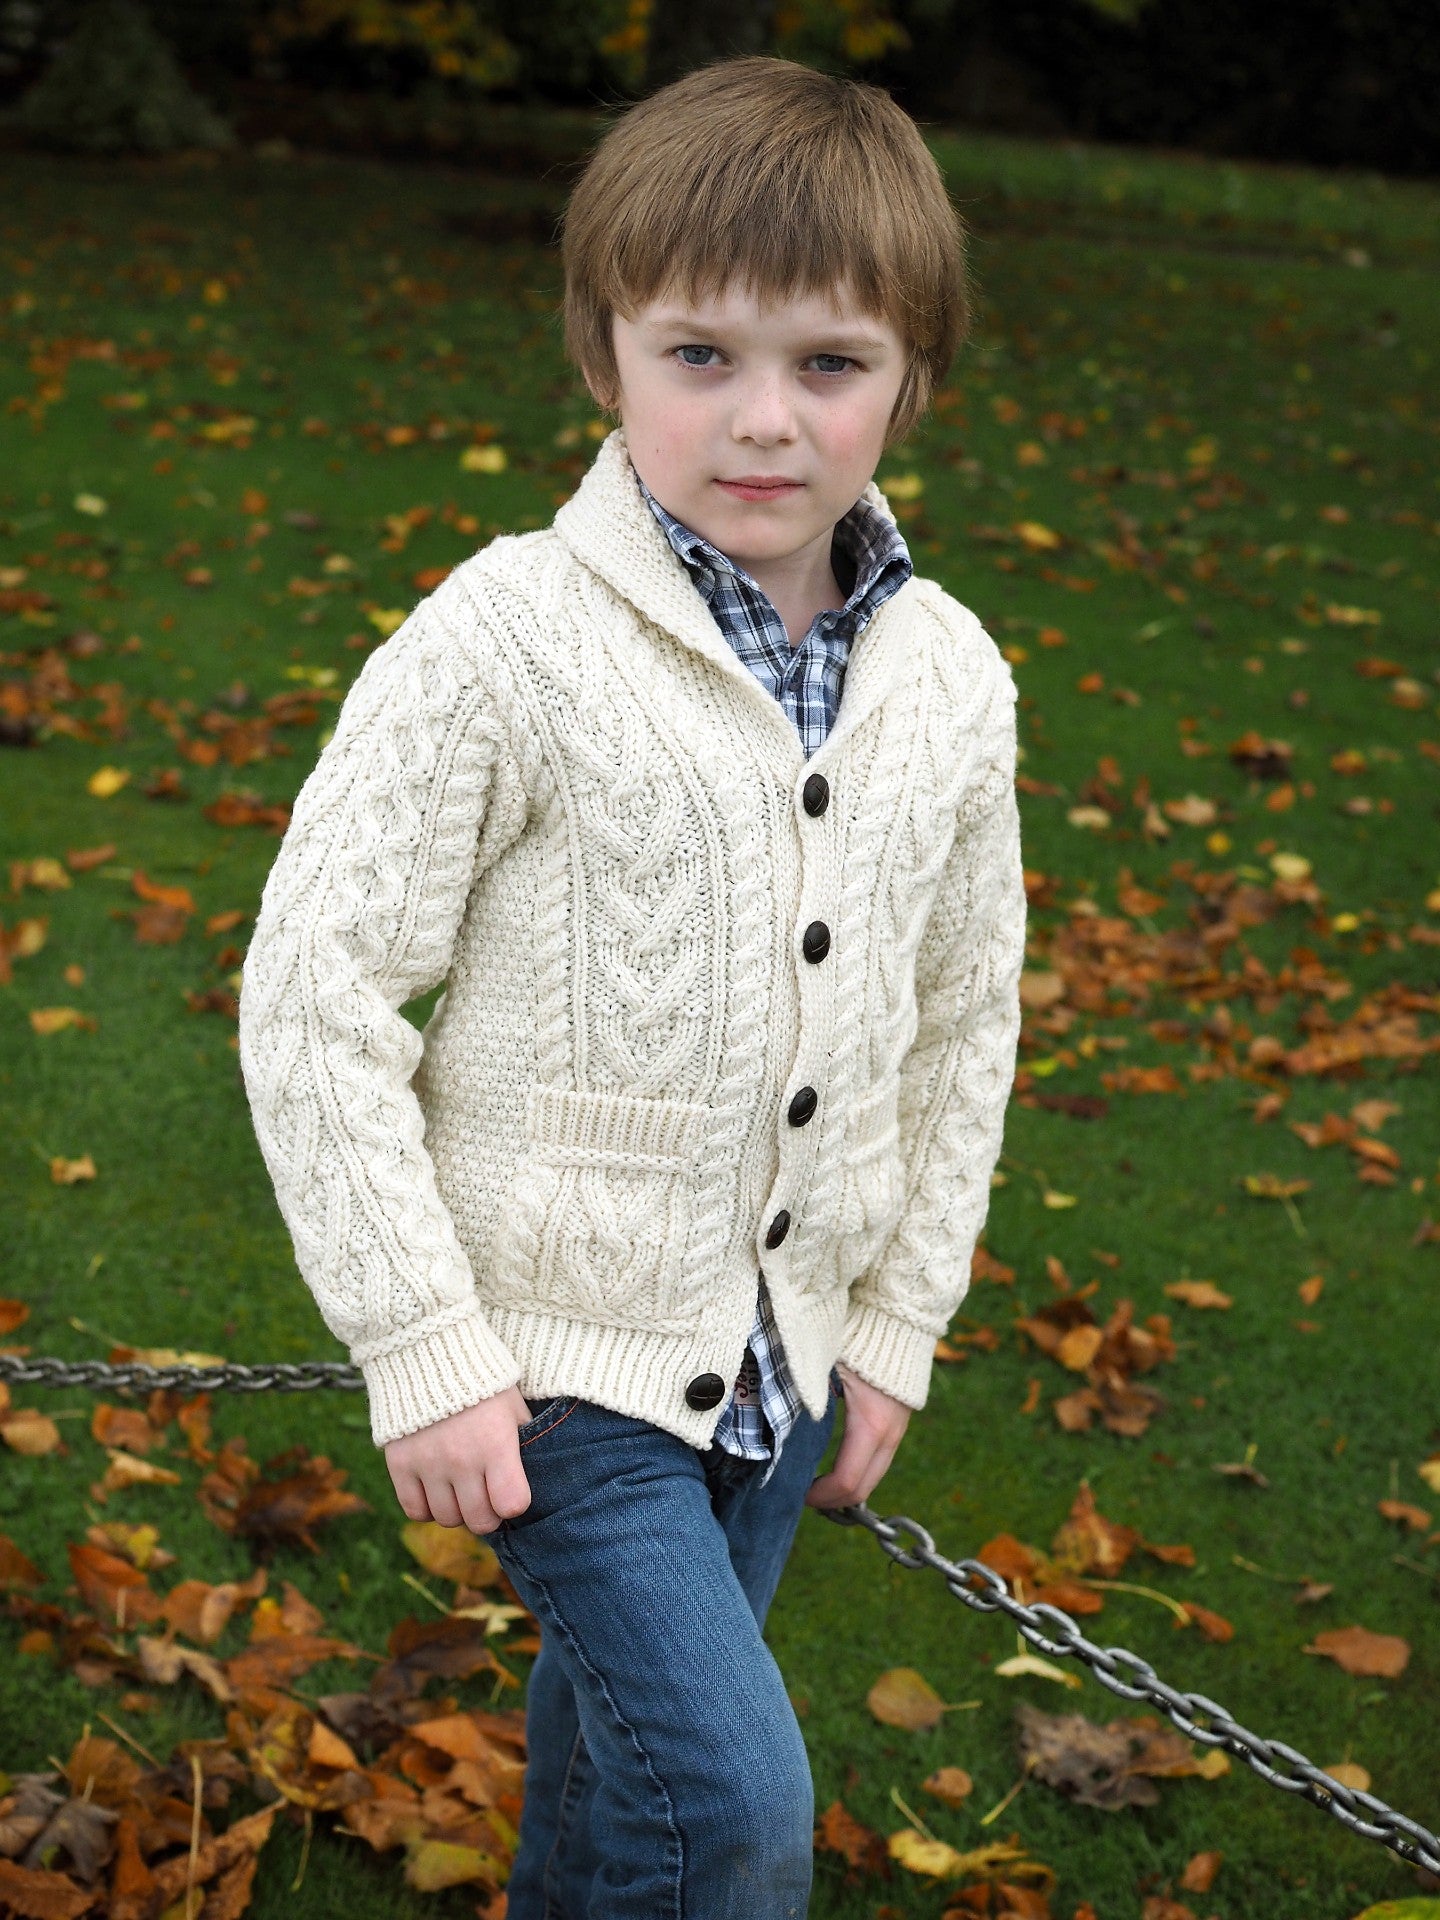 Irish Clothing for Kids | Kids Irish Sweaters & Gifts | Quills Ireland ...